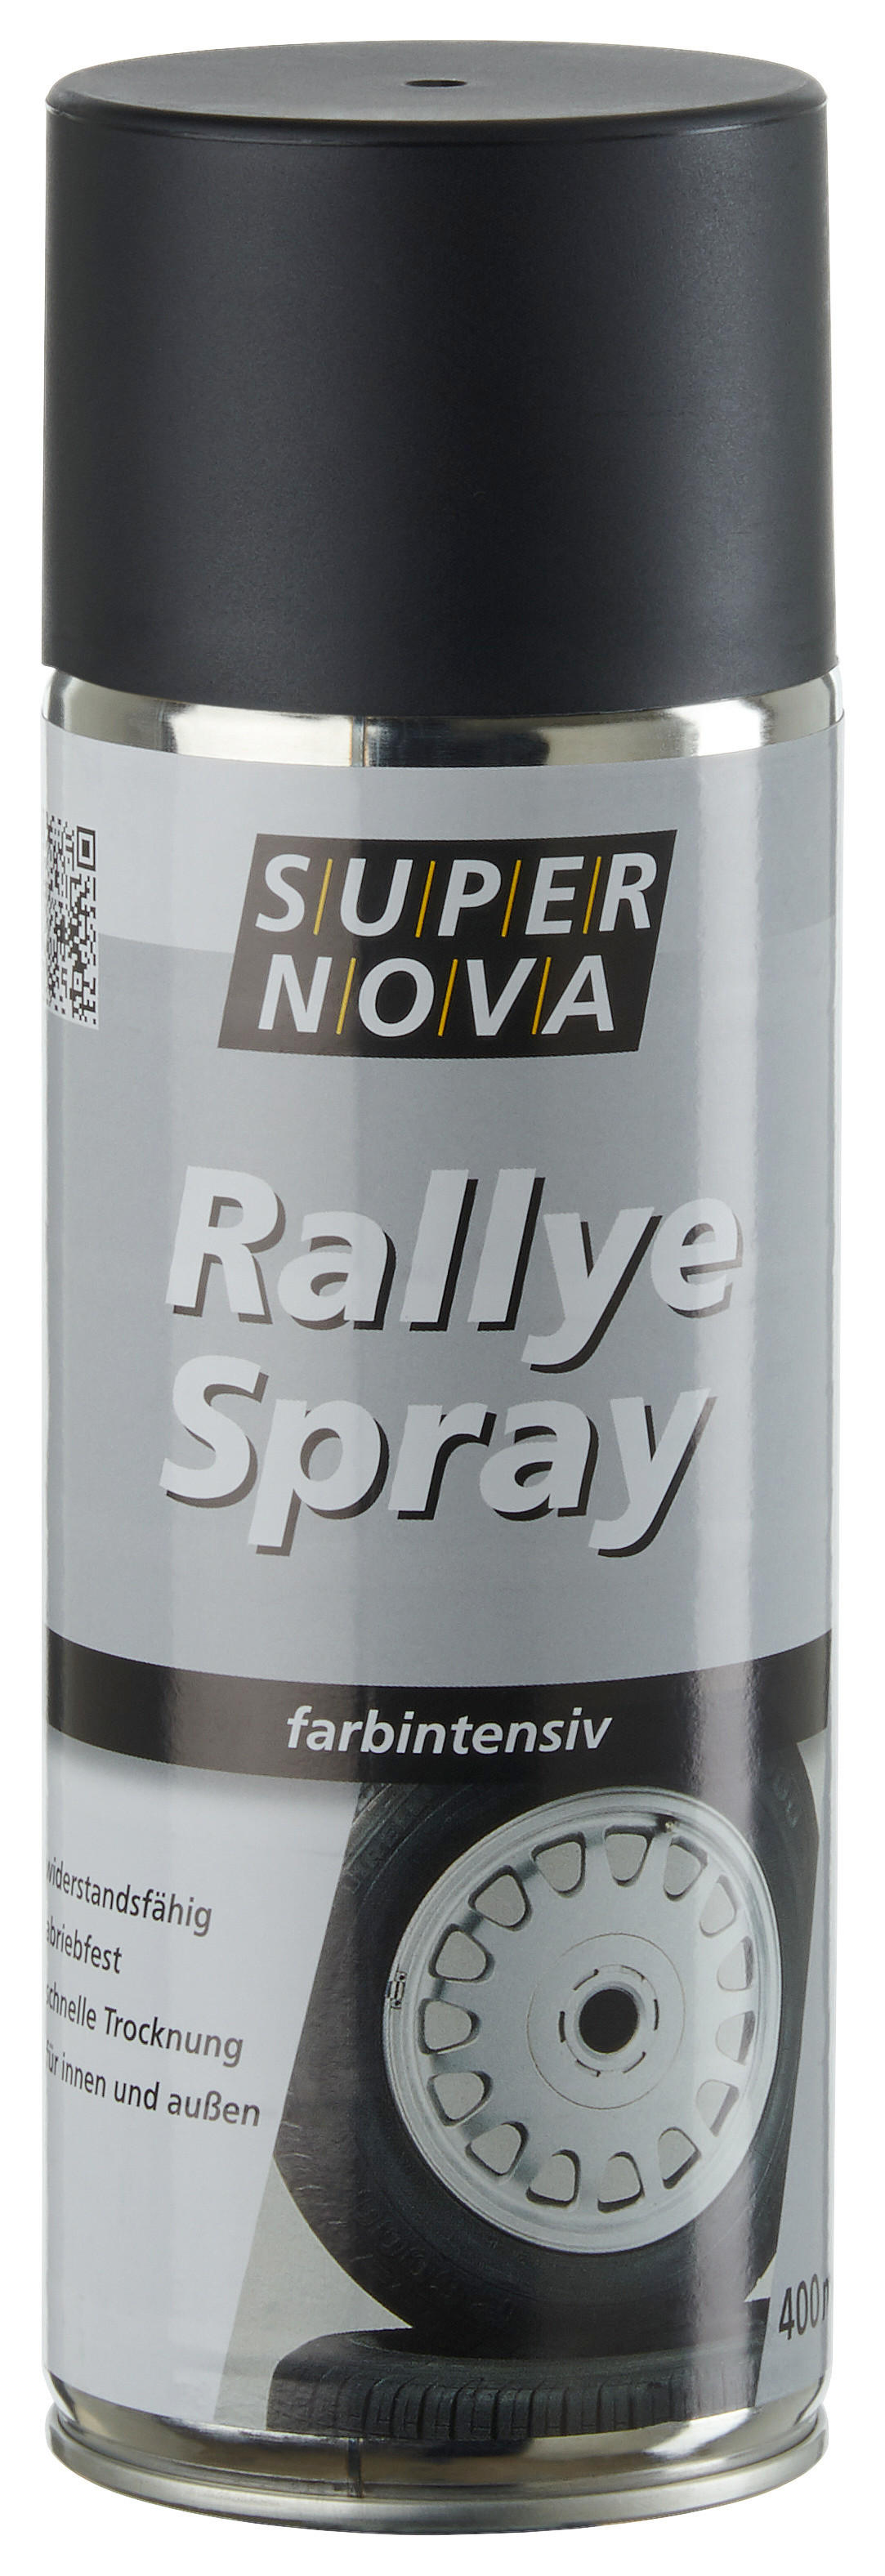 Super-Nova Rallye-Spray mattschwarz matt ca. 0,4 l Rallye-Spray 400ml - mattschwarz (400ml)